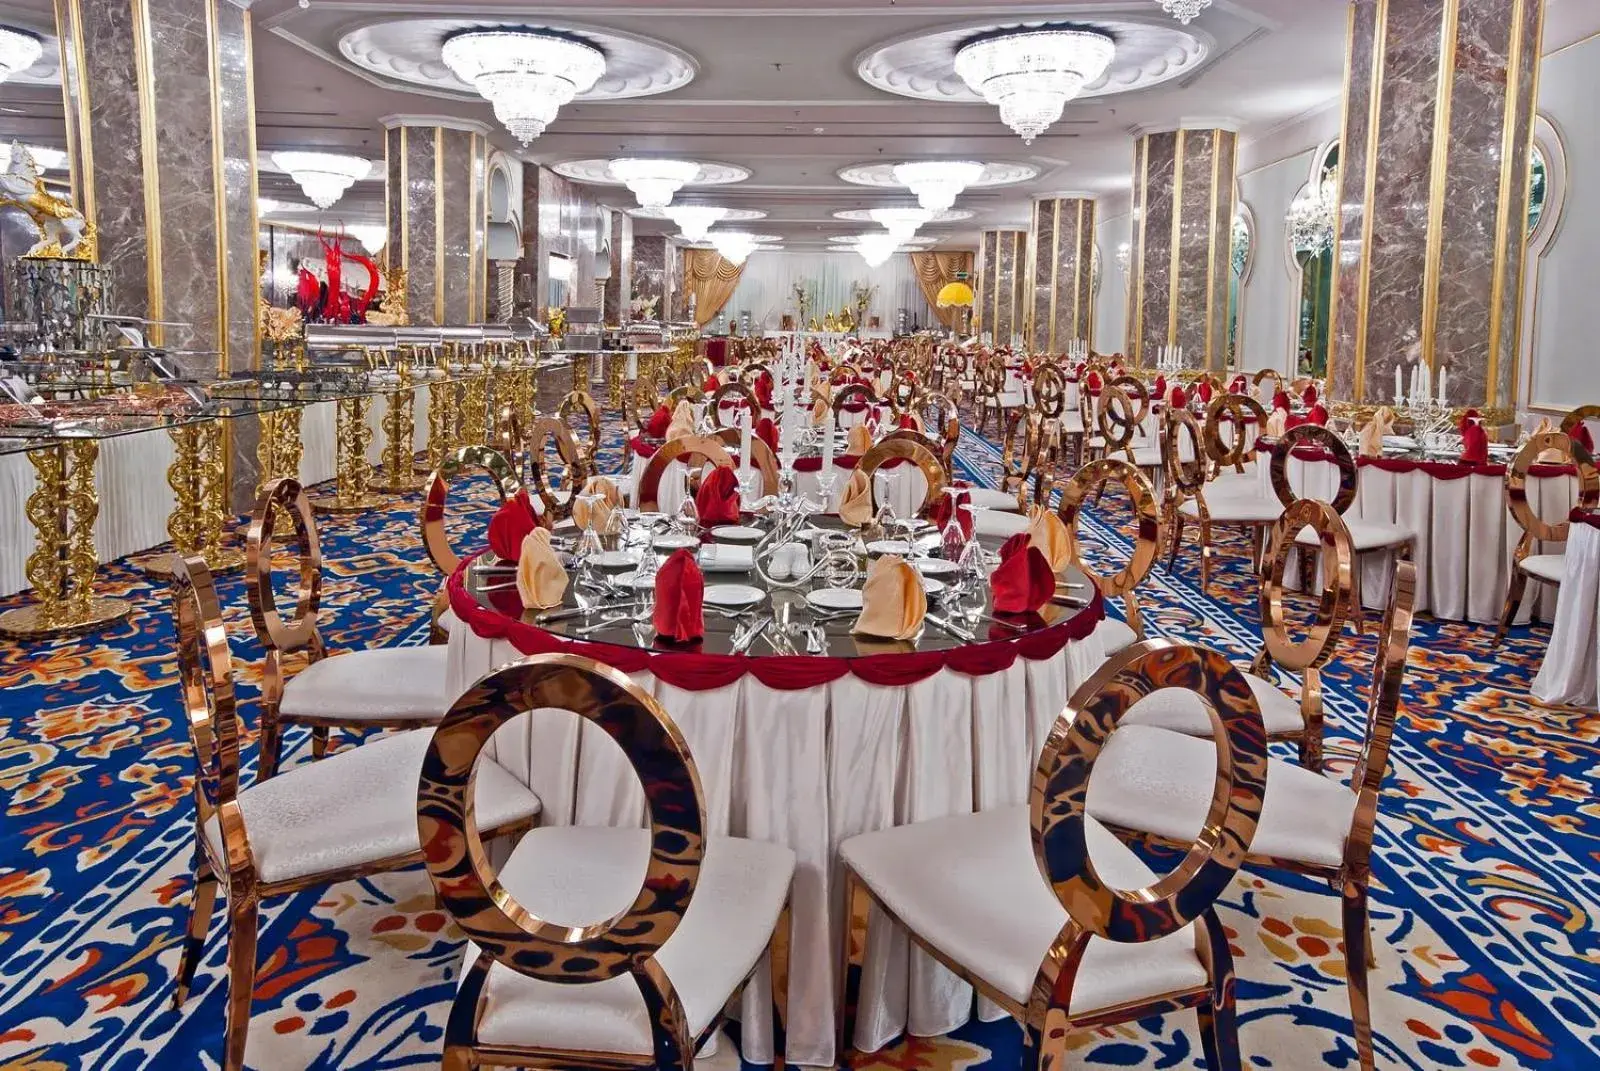 Banquet/Function facilities, Banquet Facilities in Casablanca Hotel Jeddah